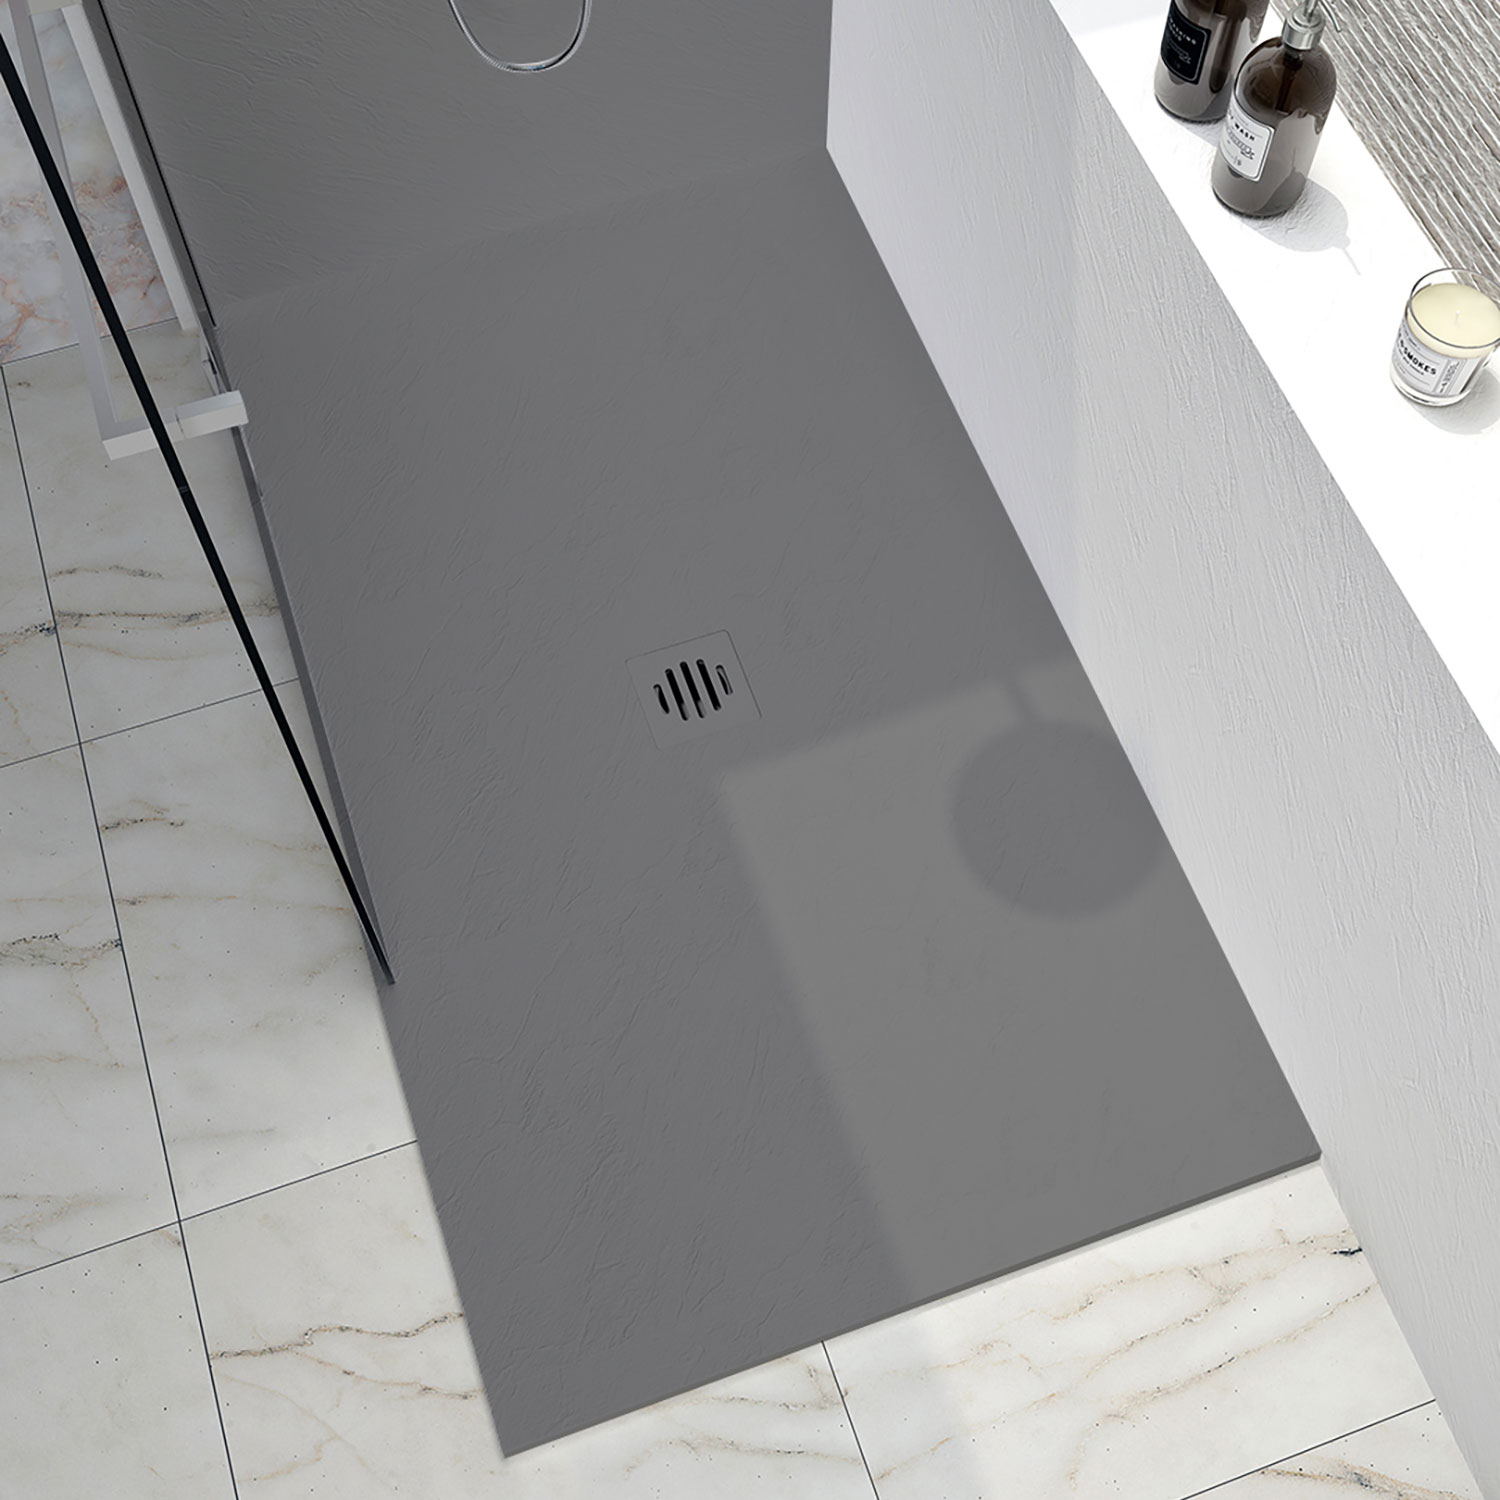 Shower base Slate 48 x 32, tile flange not installed, in concrete grey